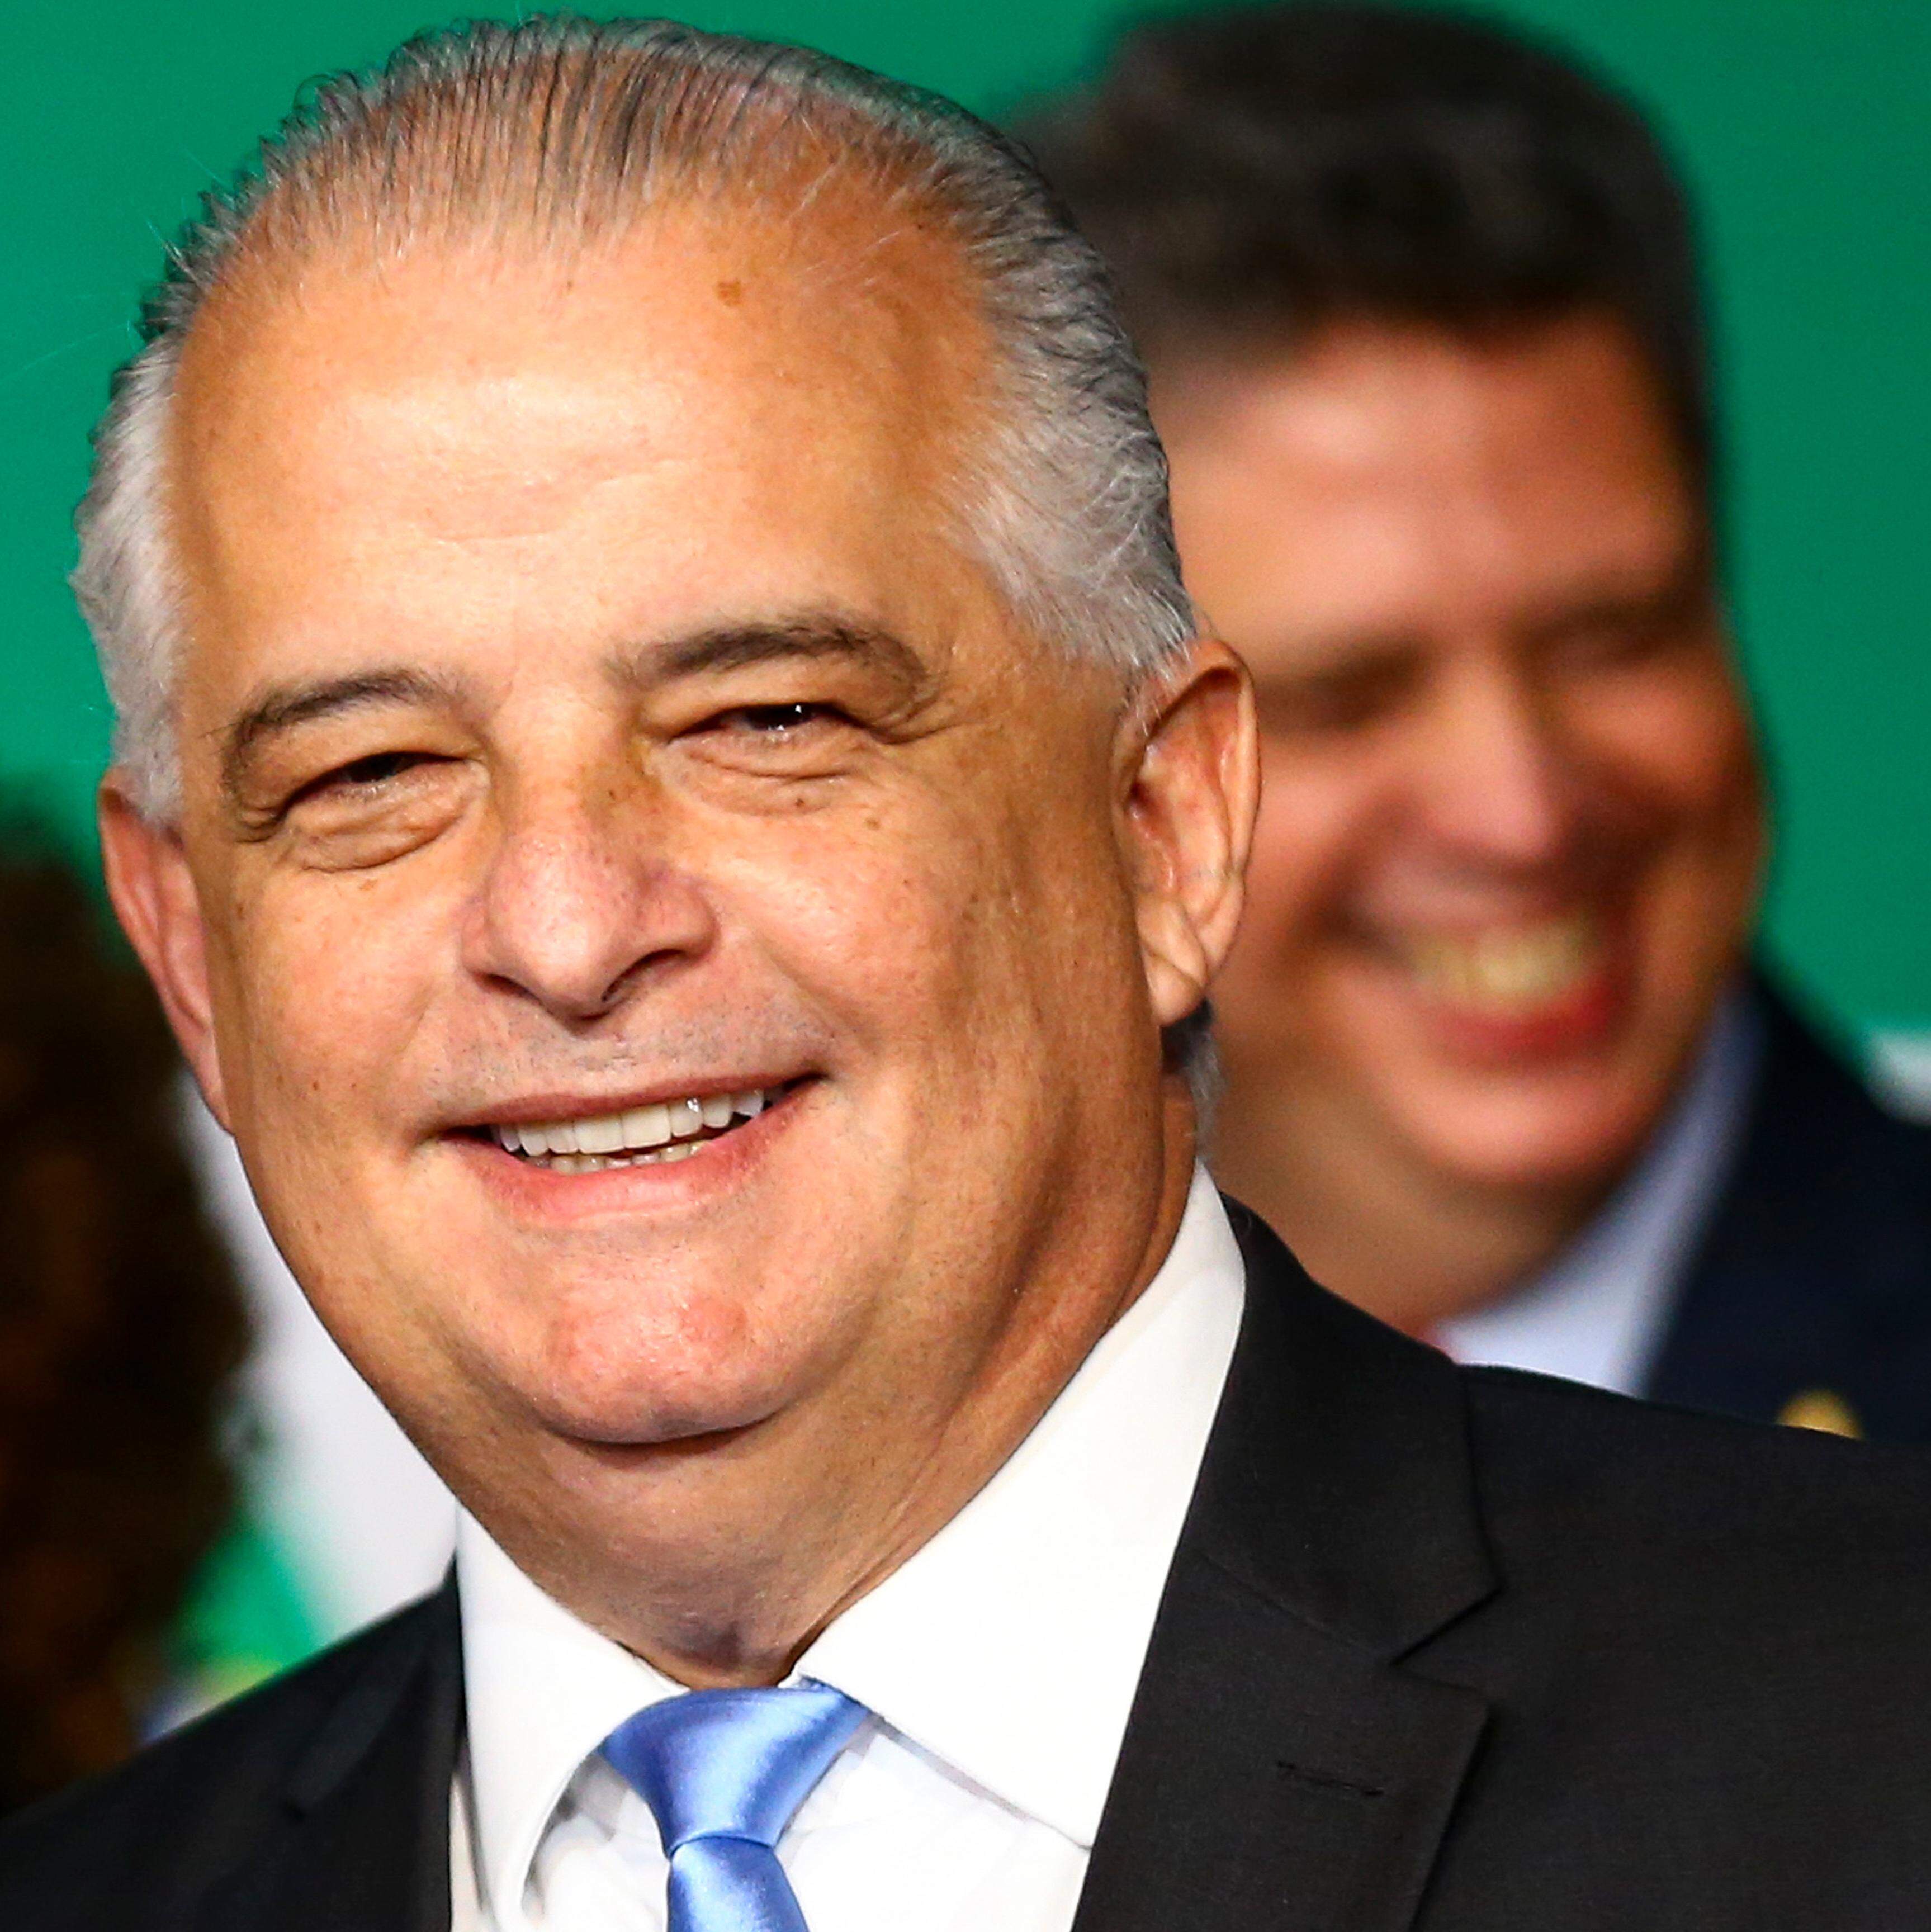 Programa 'Voa Brasil' ainda não foi lançado; site de 'cadastro' é golpe